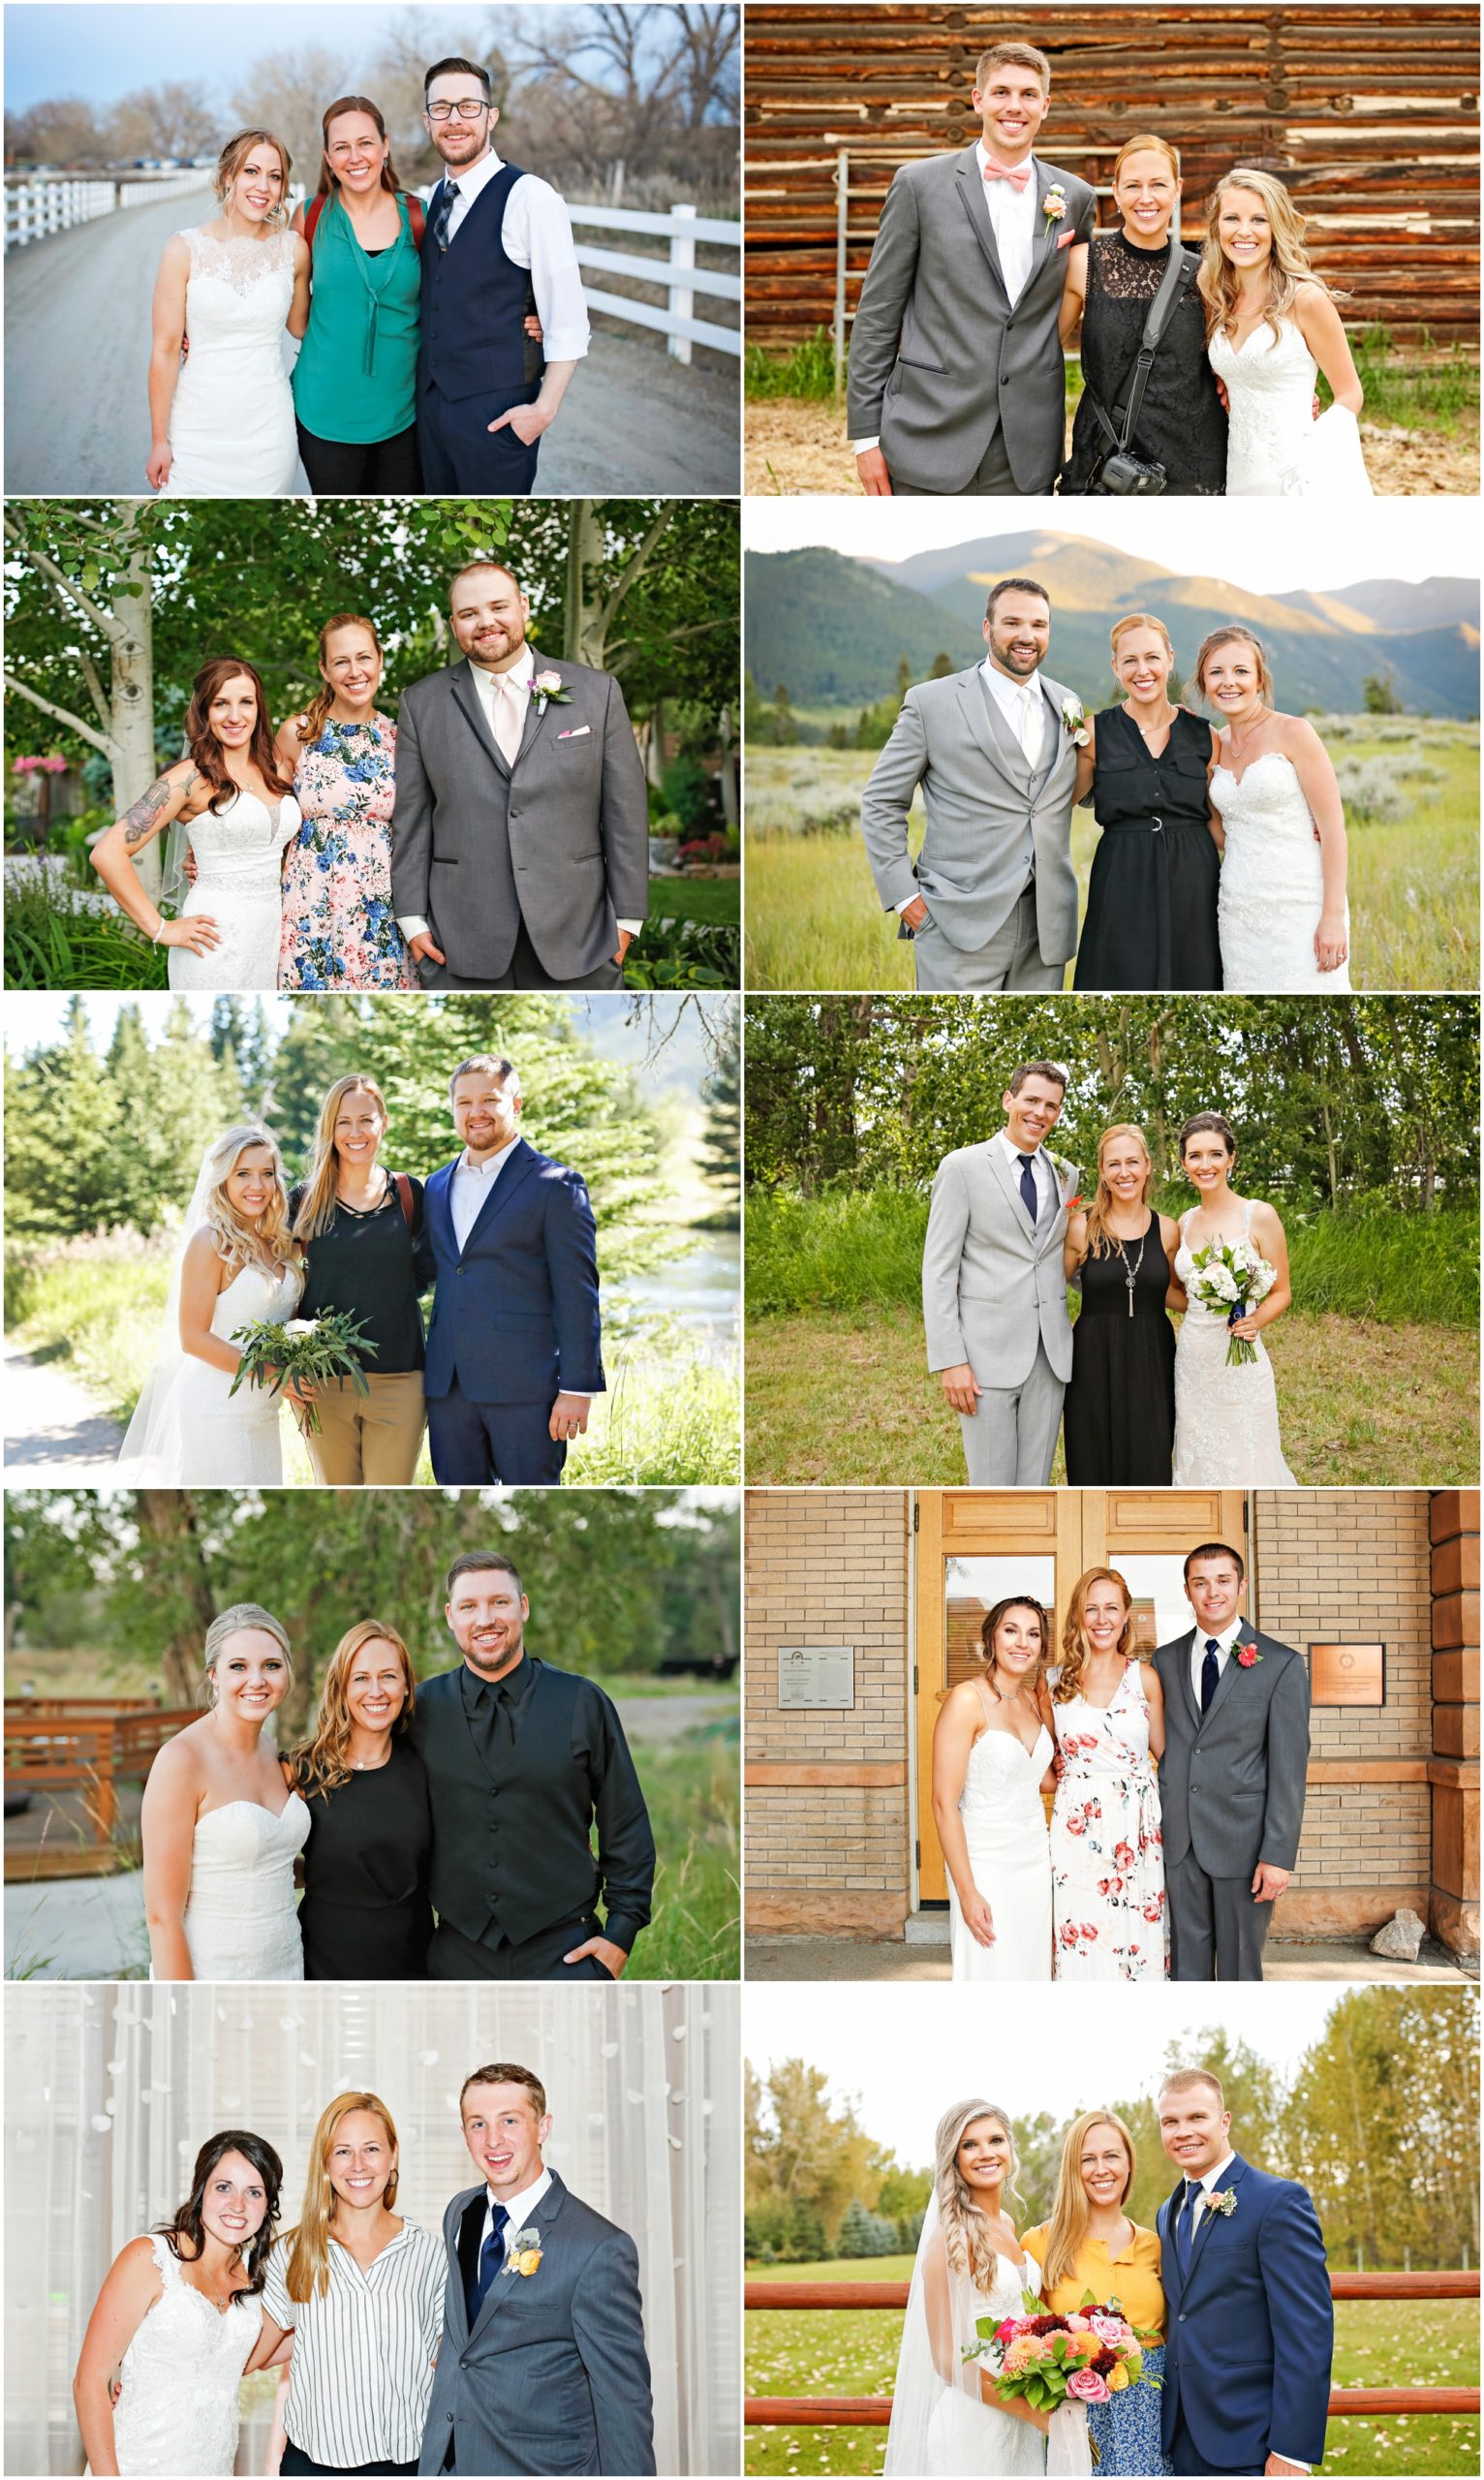 Montana Weddings